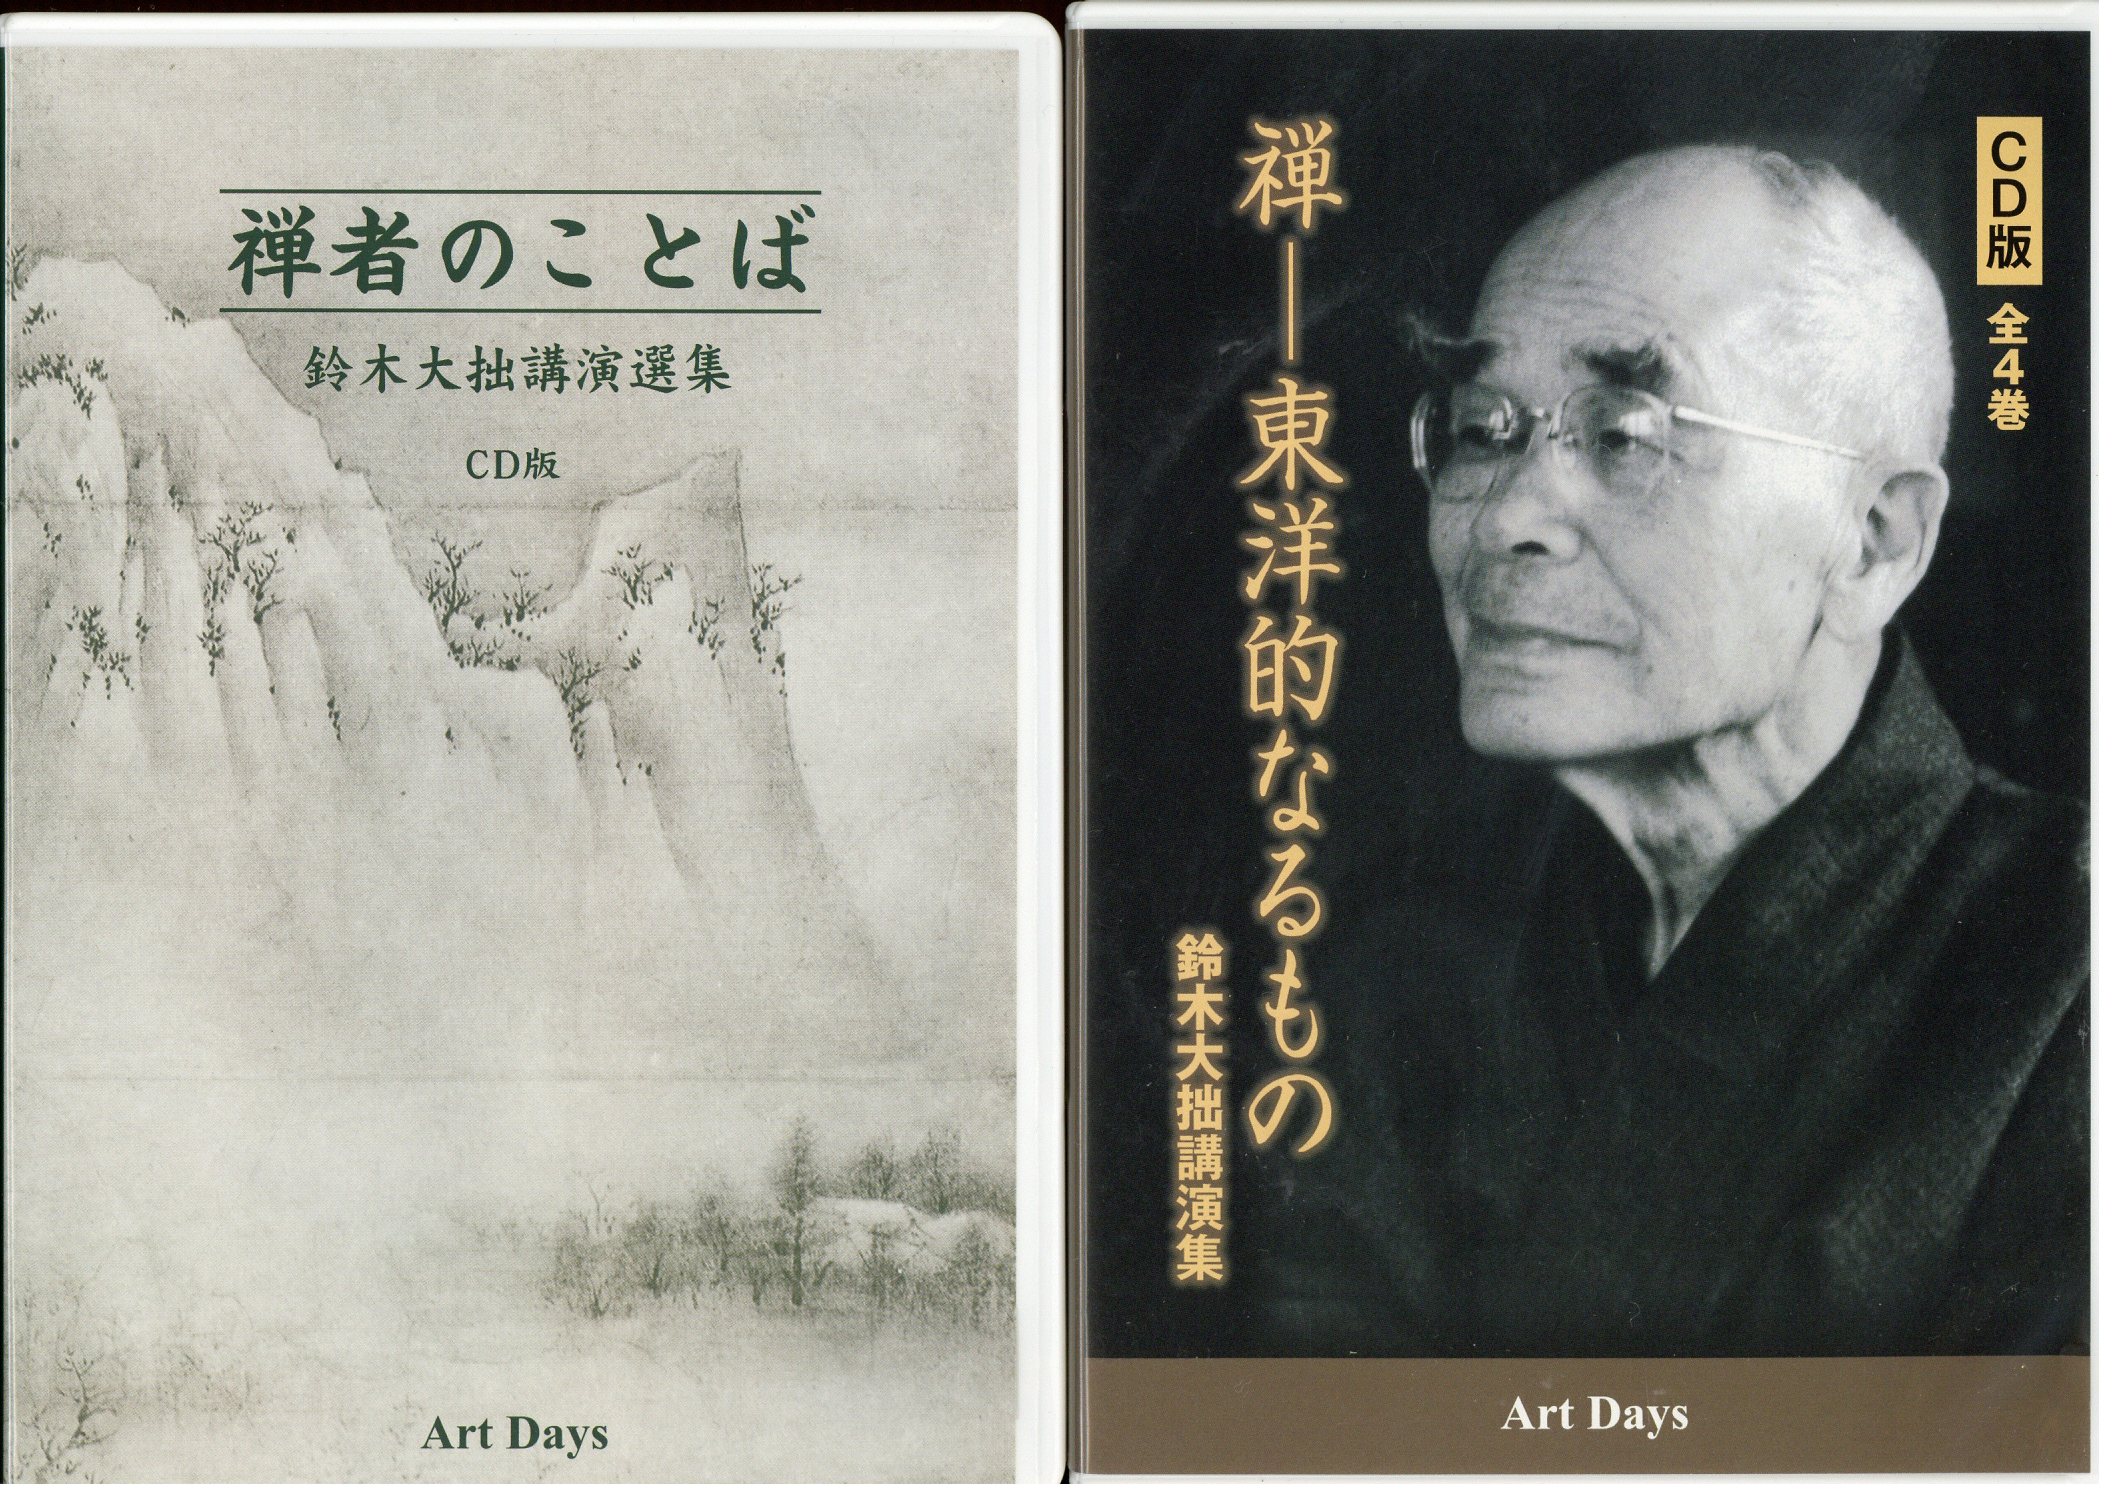 CD 鈴木大拙 禅者のことば(CD版全6巻)+禅-東洋的なるもの(CD版全4巻